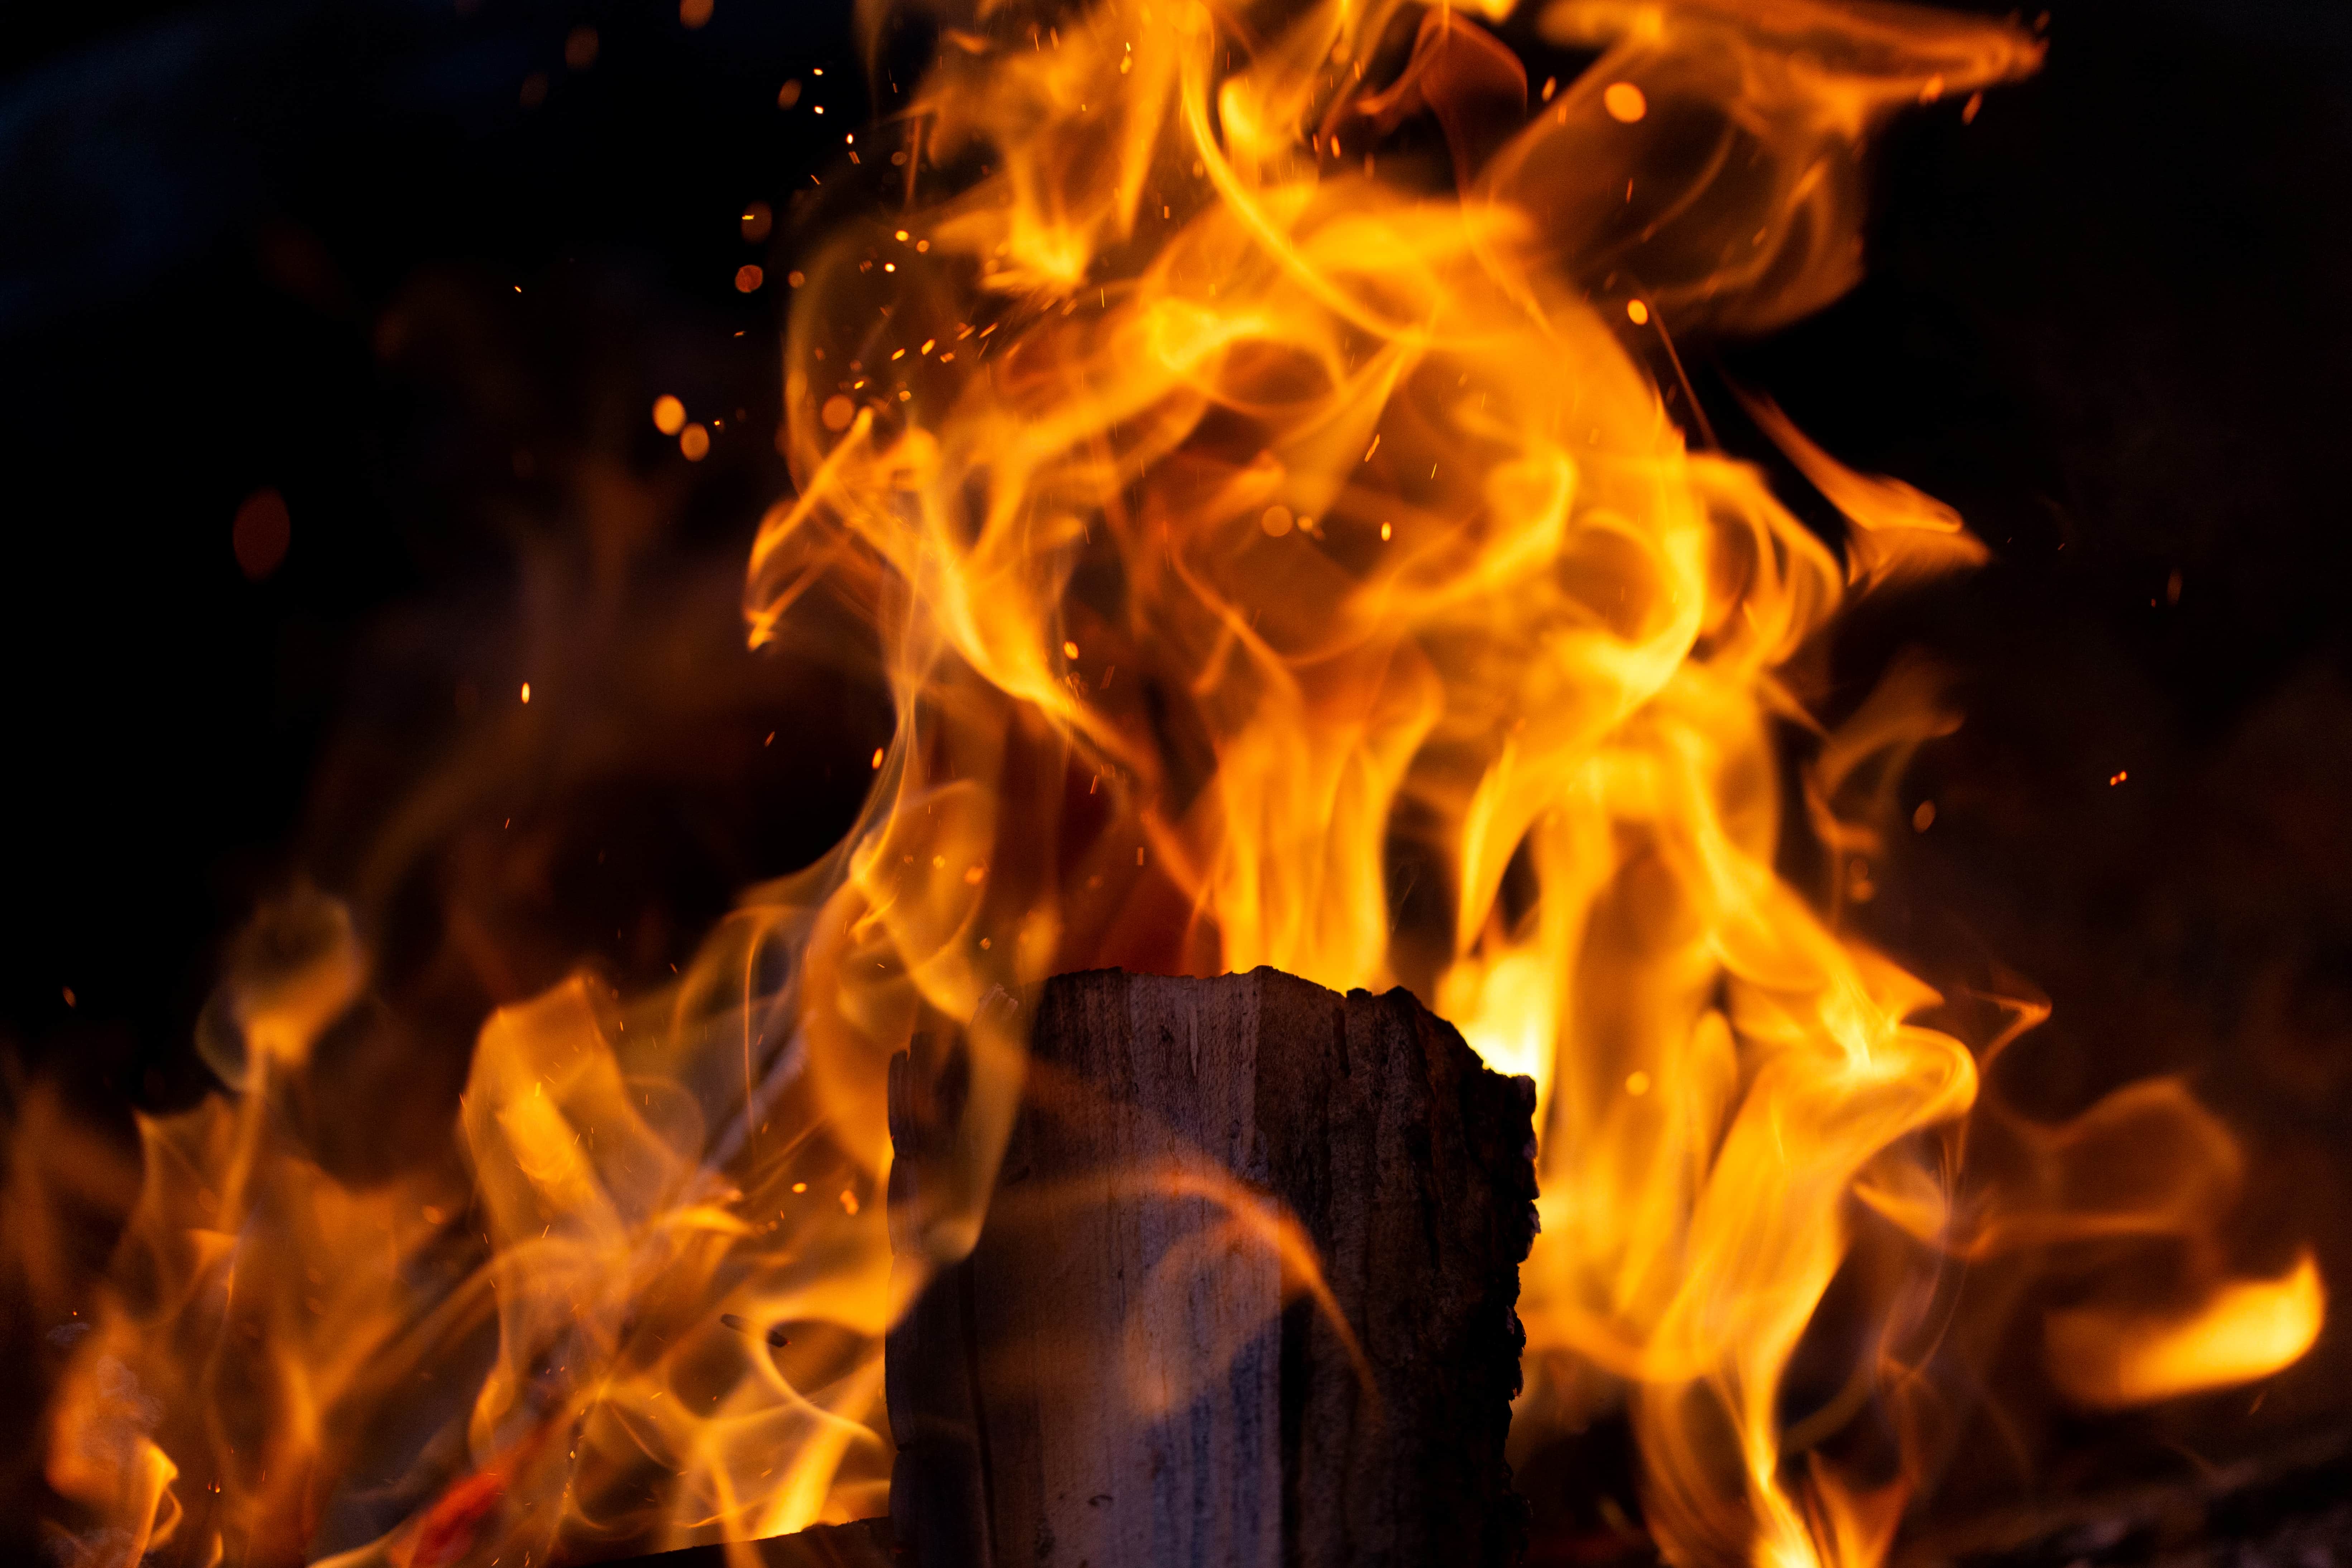 Nhiếp ảnh khung Ảnh Cháy Clip nghệ thuật  Phim Hoạt Hình Ngọn Lửa Cháy  Biểu Tượng Hình Ảnh png tải về  Miễn phí trong suốt Cánh Hoa png Tải về